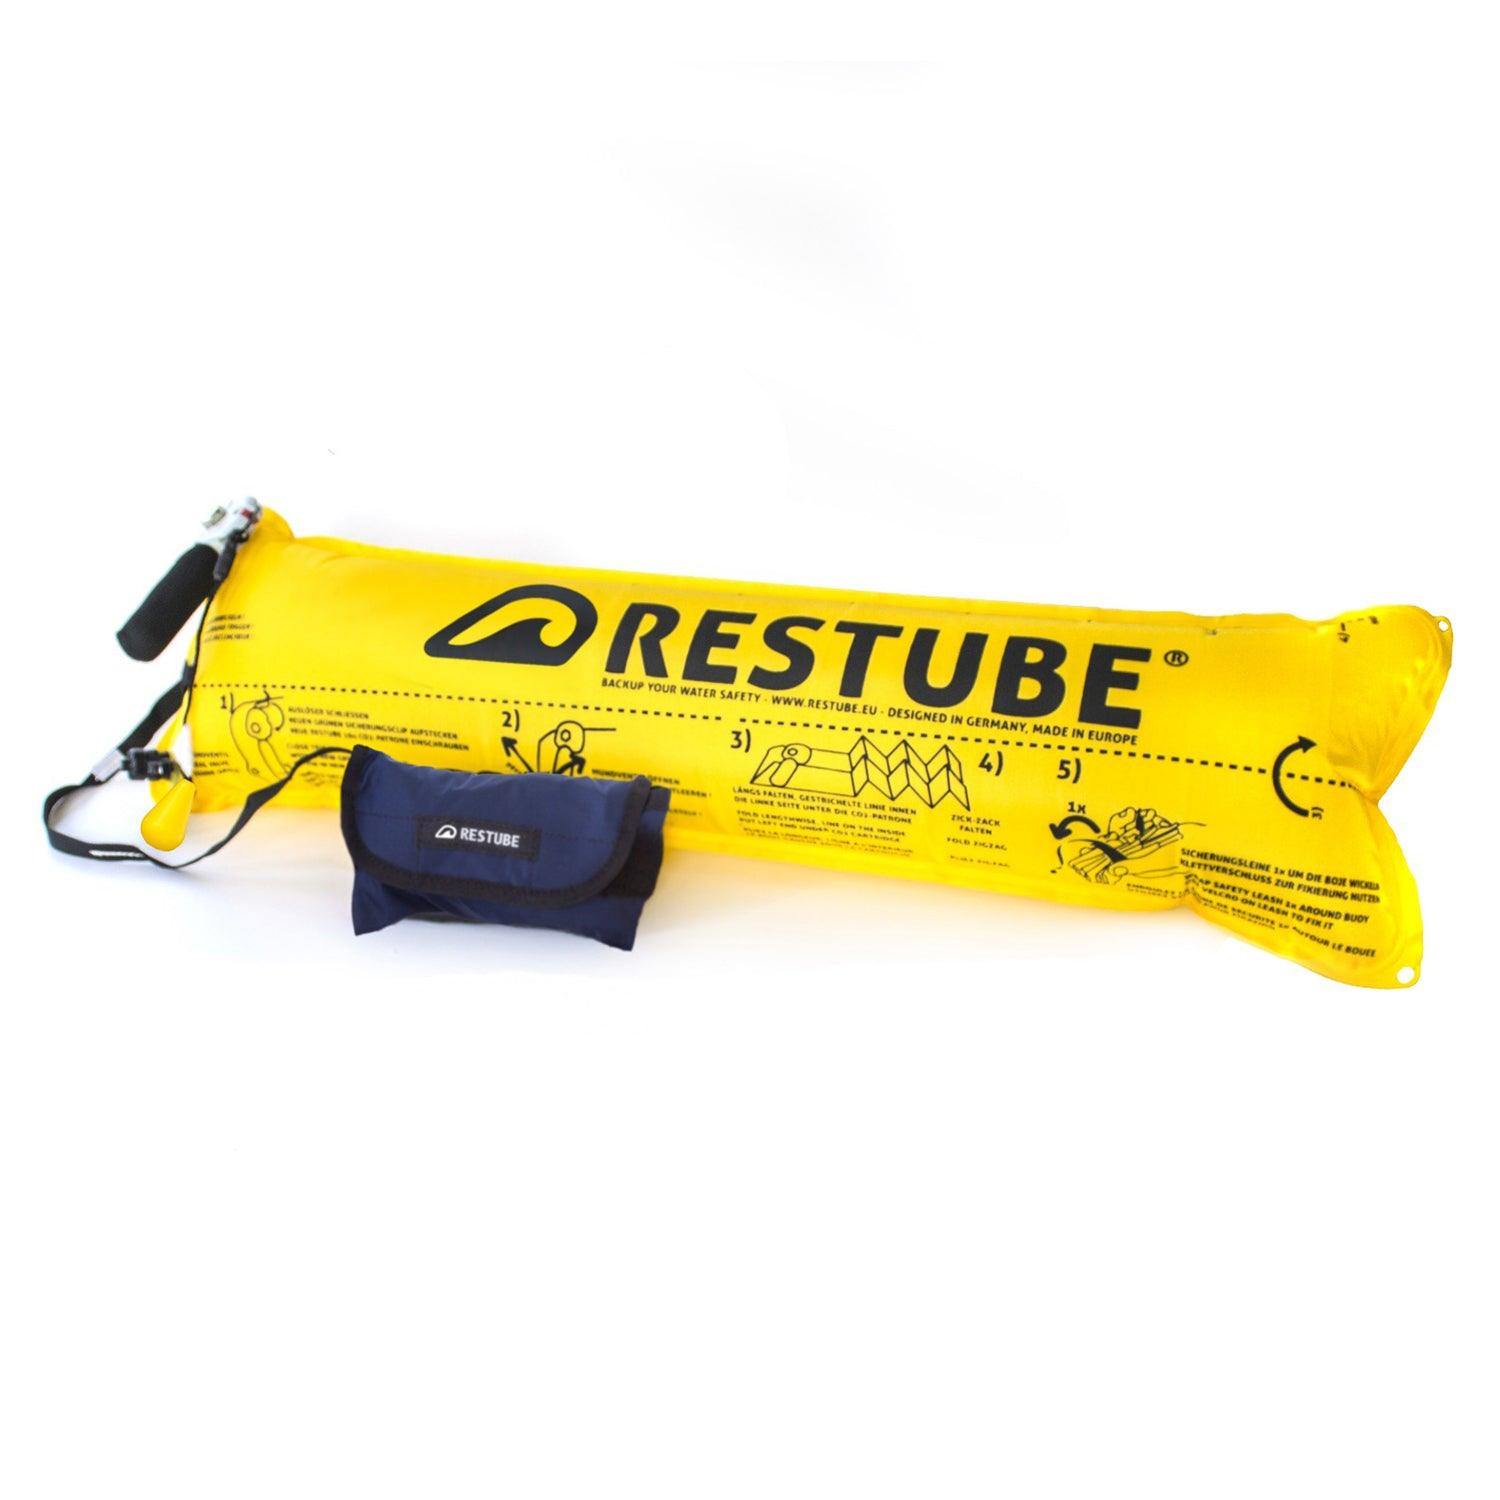 Produktbild von zubehör " Restube Basic " der Marke Restube für 59.00 €. Erhältlich online bei Lite Venture ( www.liteventure.de )